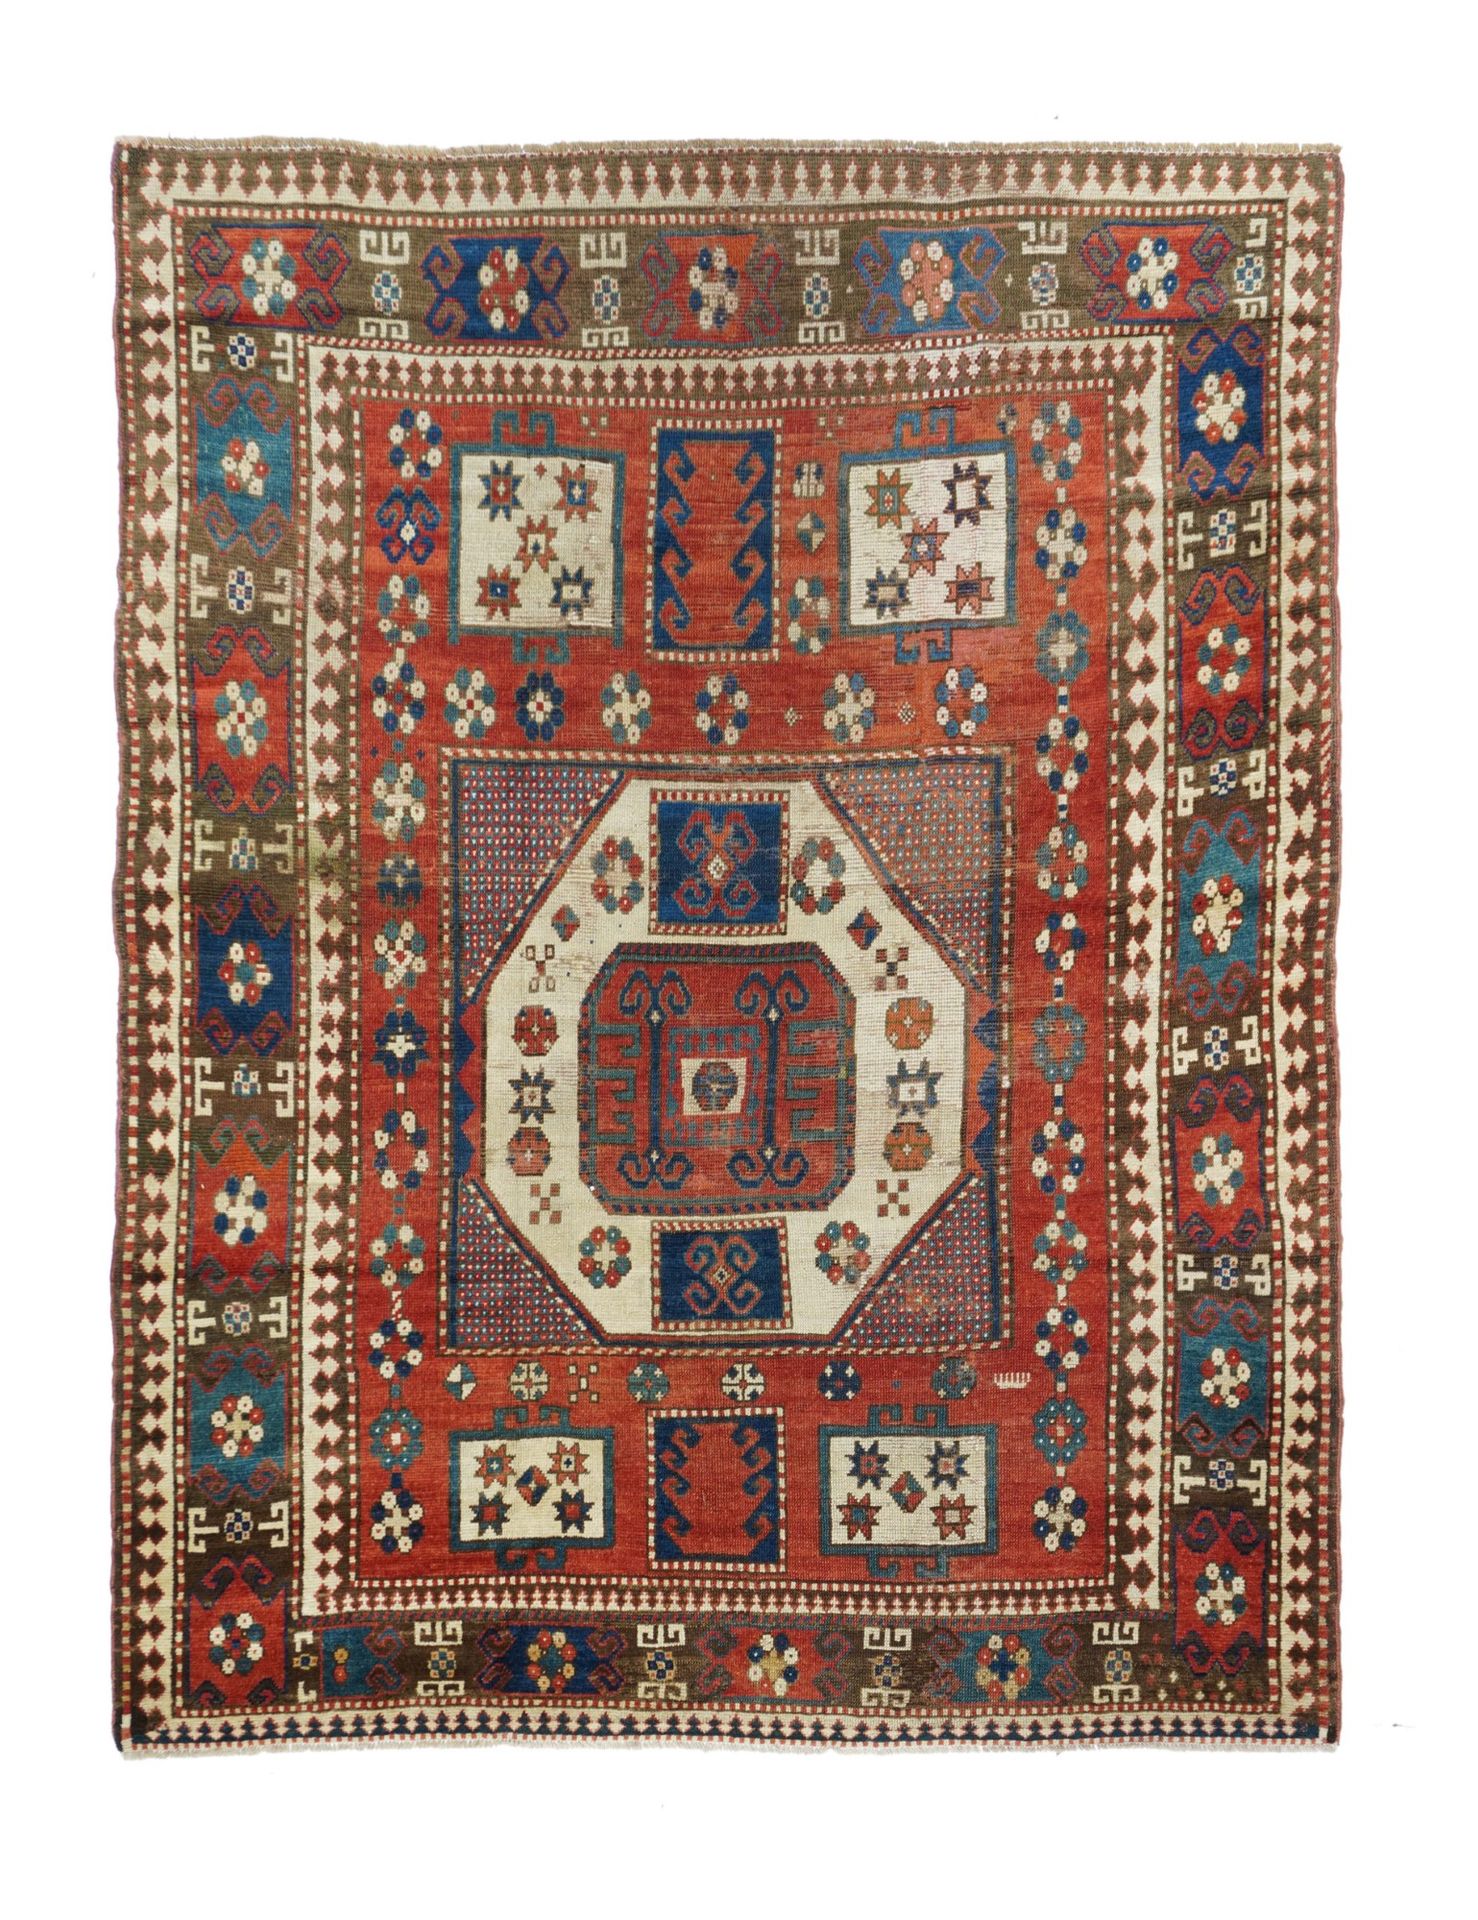 Null Antique Kazak Rug, 5'7" x 7'4" ( 1.70 x 2.24 M )